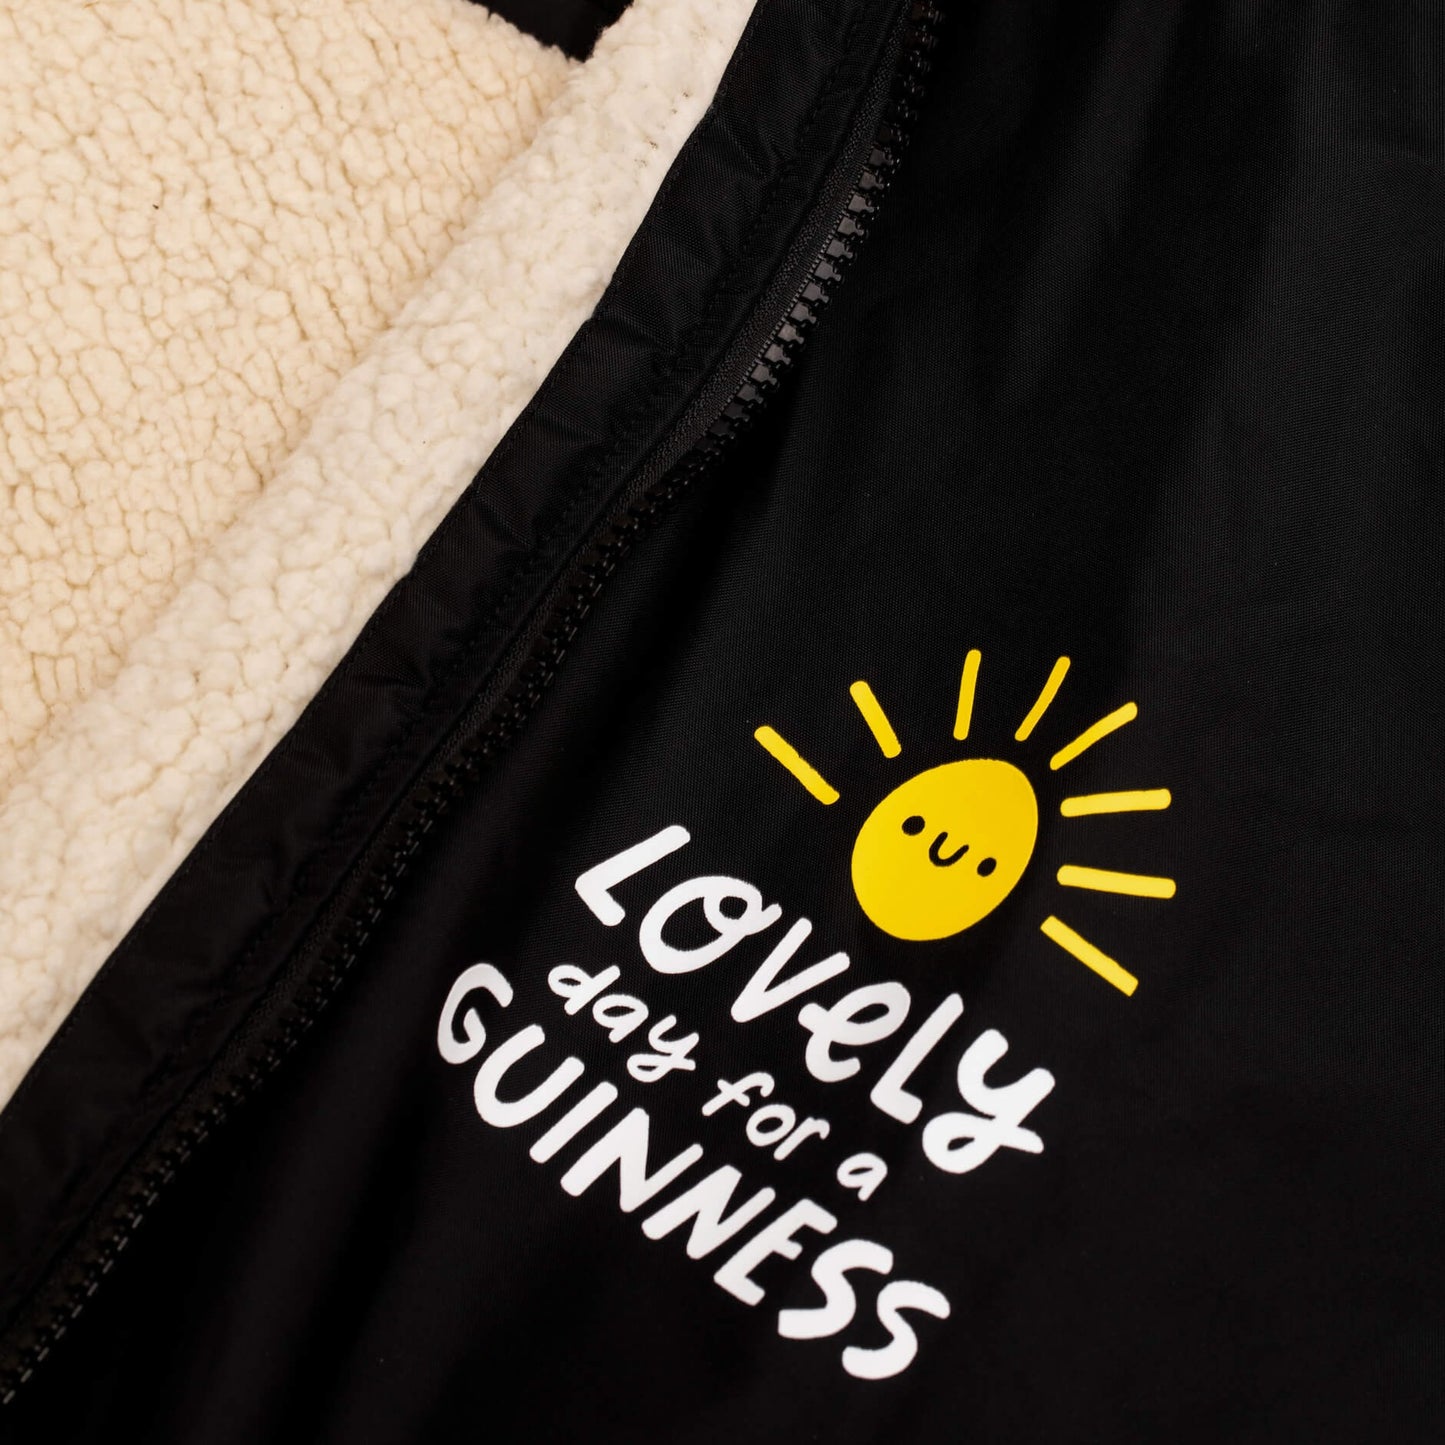 Guinness Storehouse and Kathi Burke cheast Lovely Day logo on the Dry Robe.